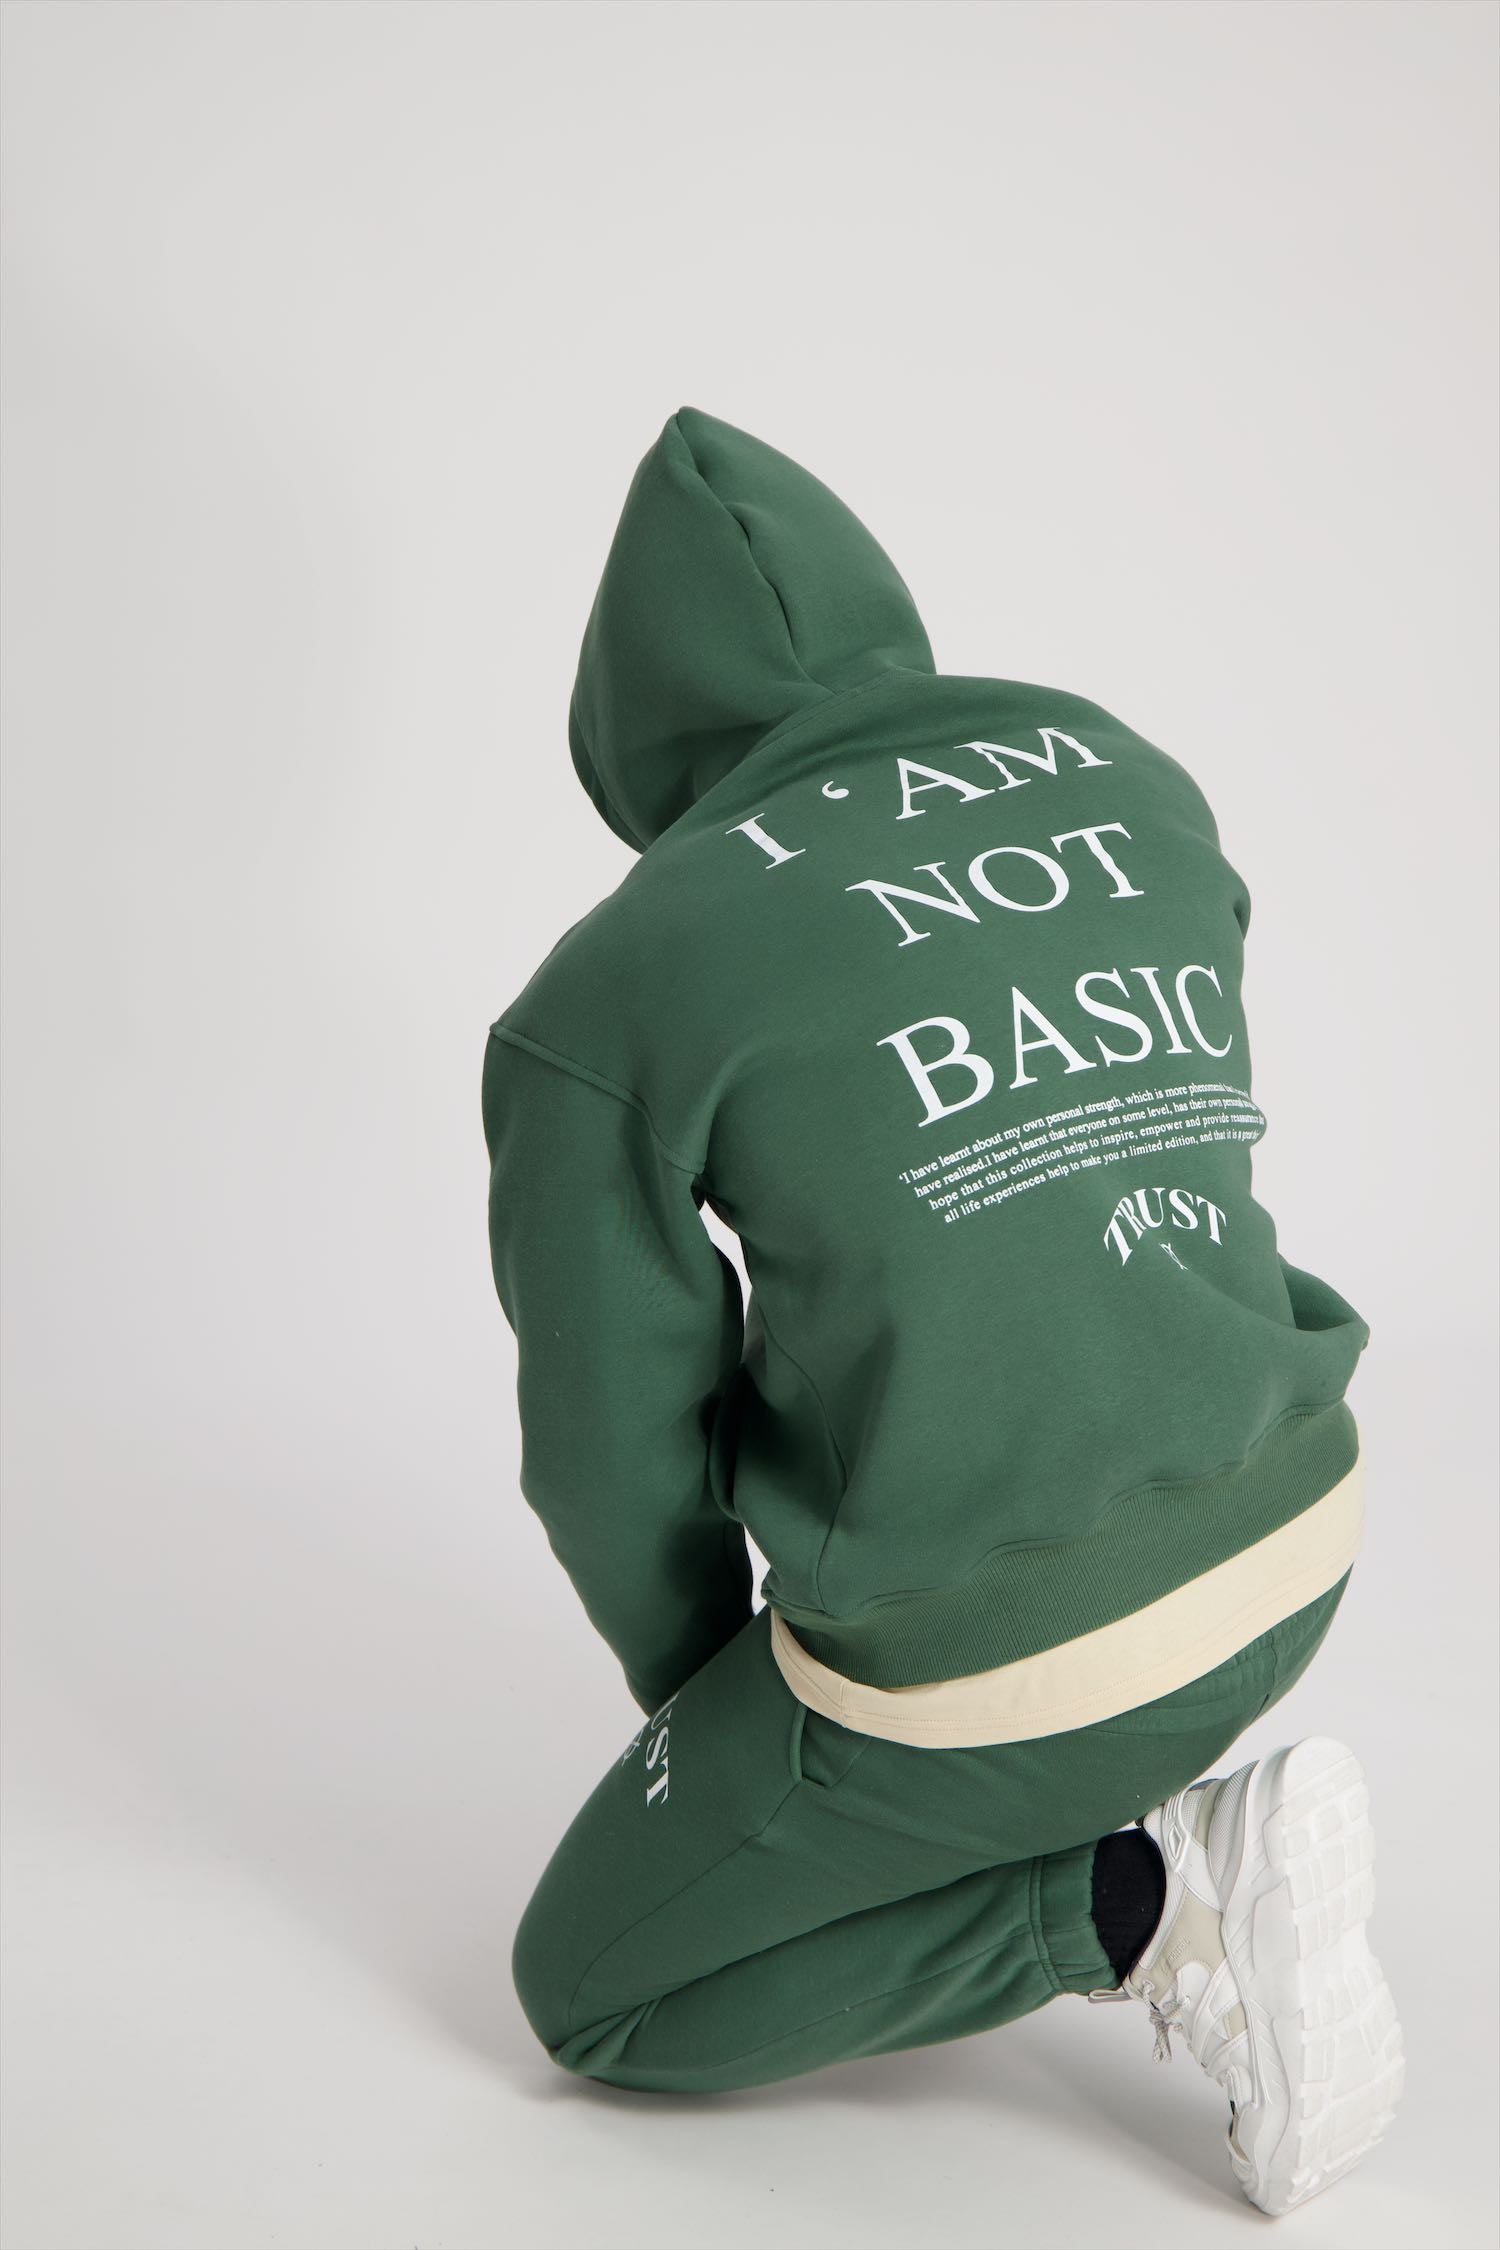 'I'AM NOT BASIC' Green Zipper Hoodie